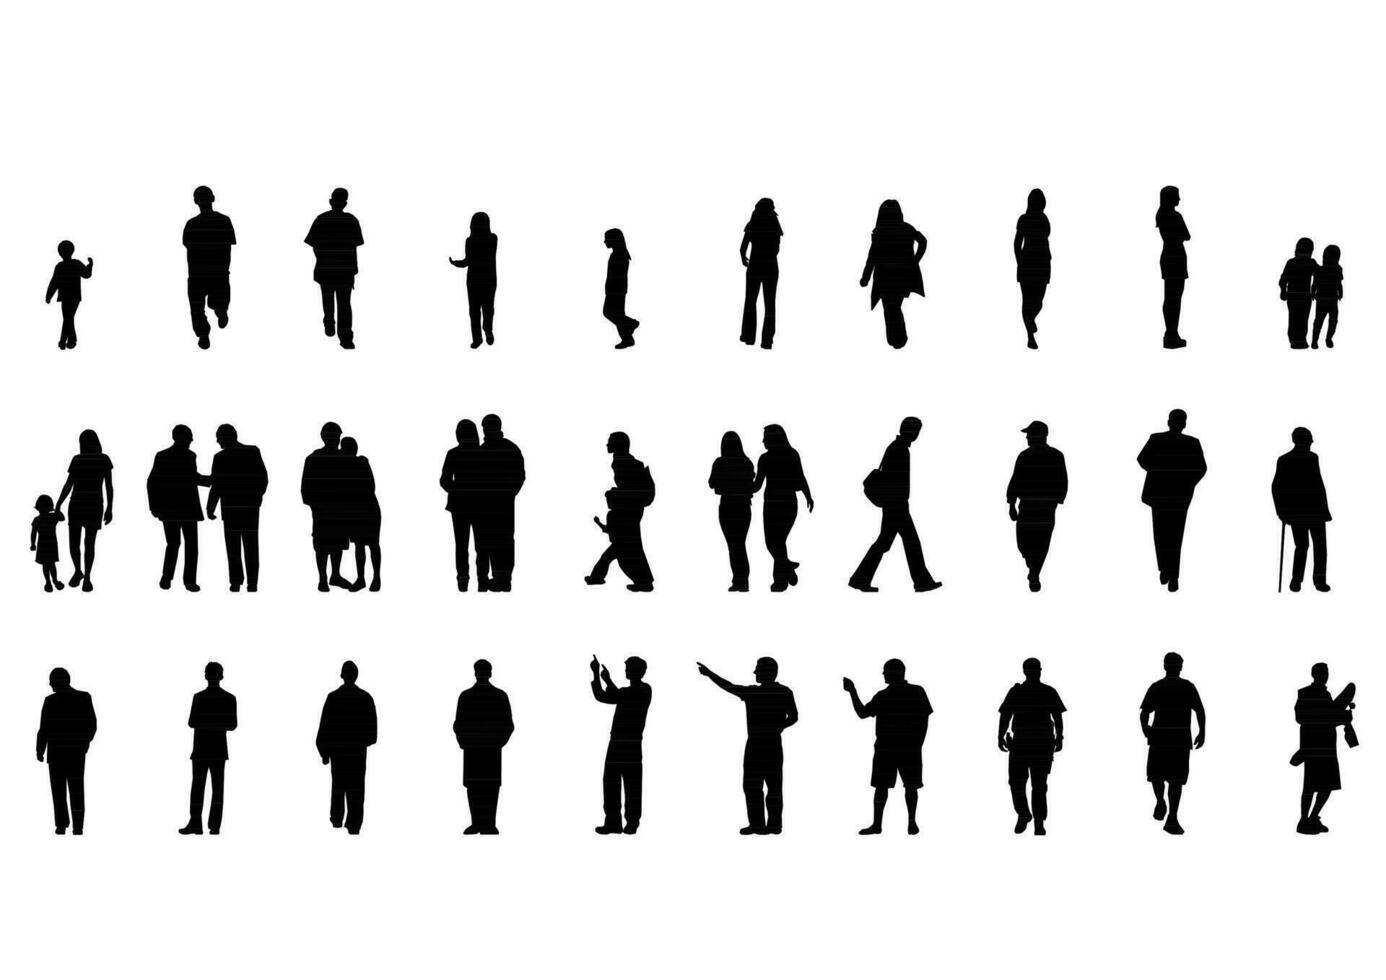 silhouette gens homme femme vecteur illustration. isolé graphique silhouettes la personne isolé esquisser simplicité main tiré Humain continu noir doubler. gens supporter conception groupe affaires concept.